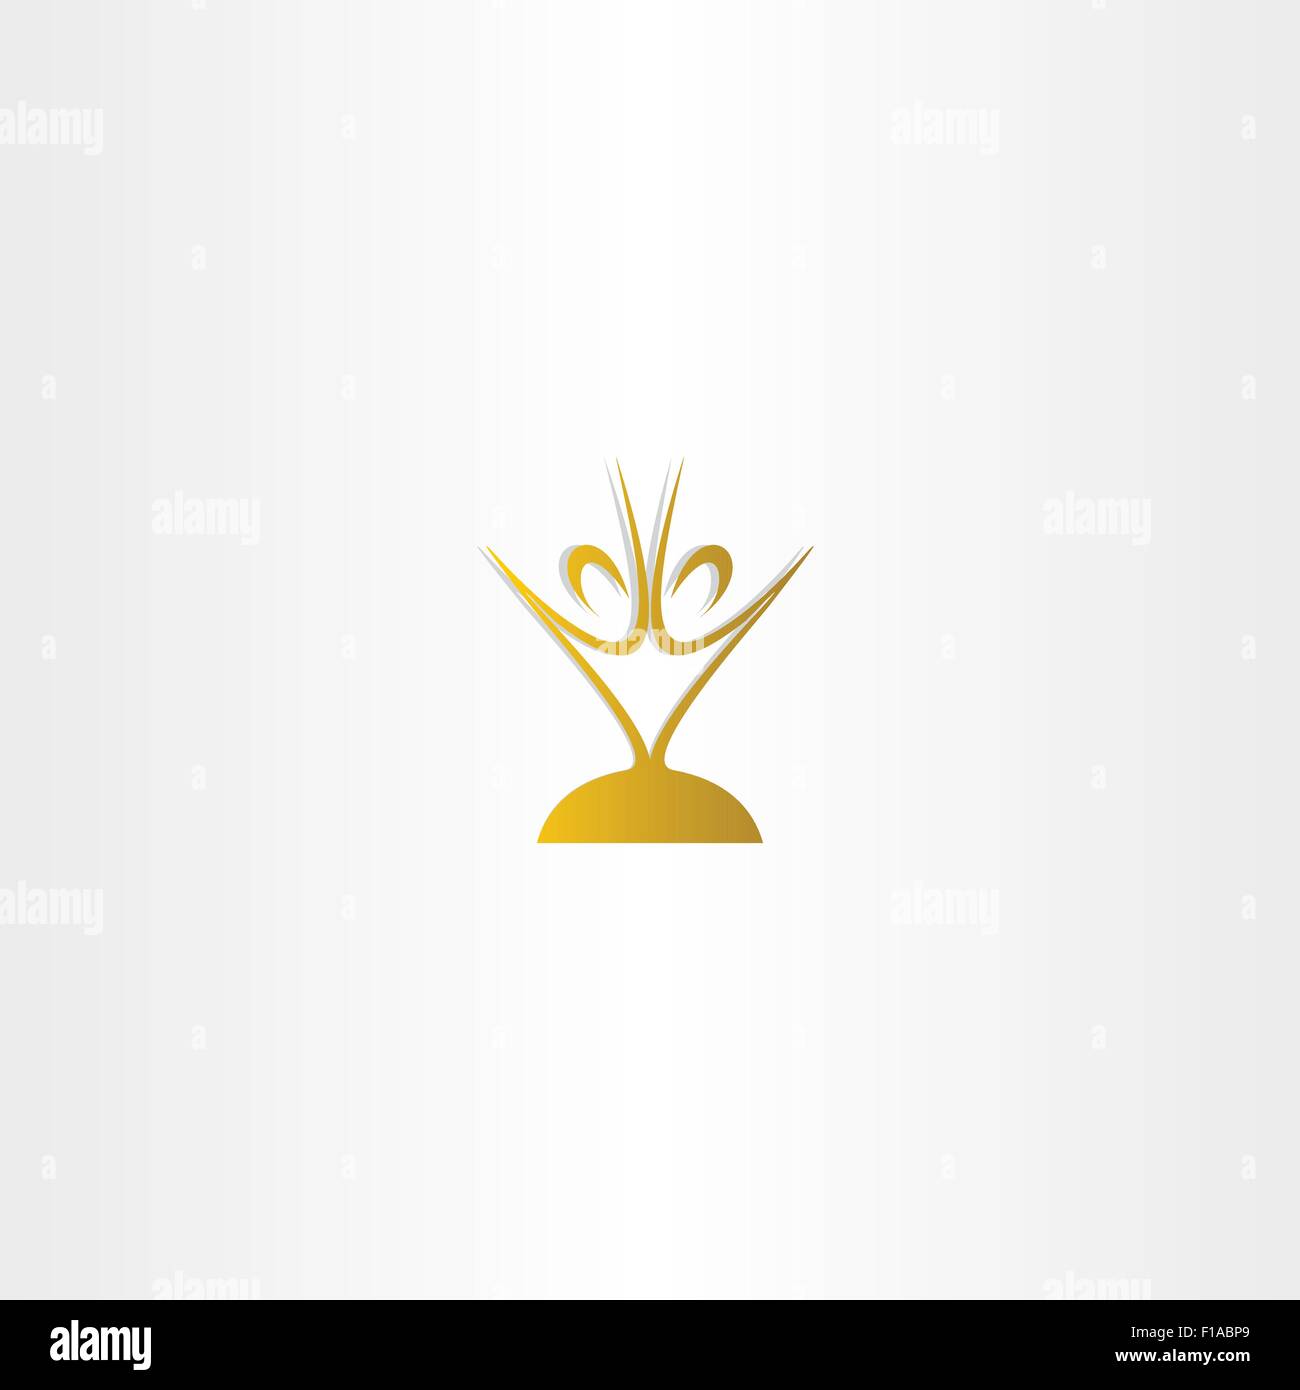 golden chalice people vector logo design Stock Vector